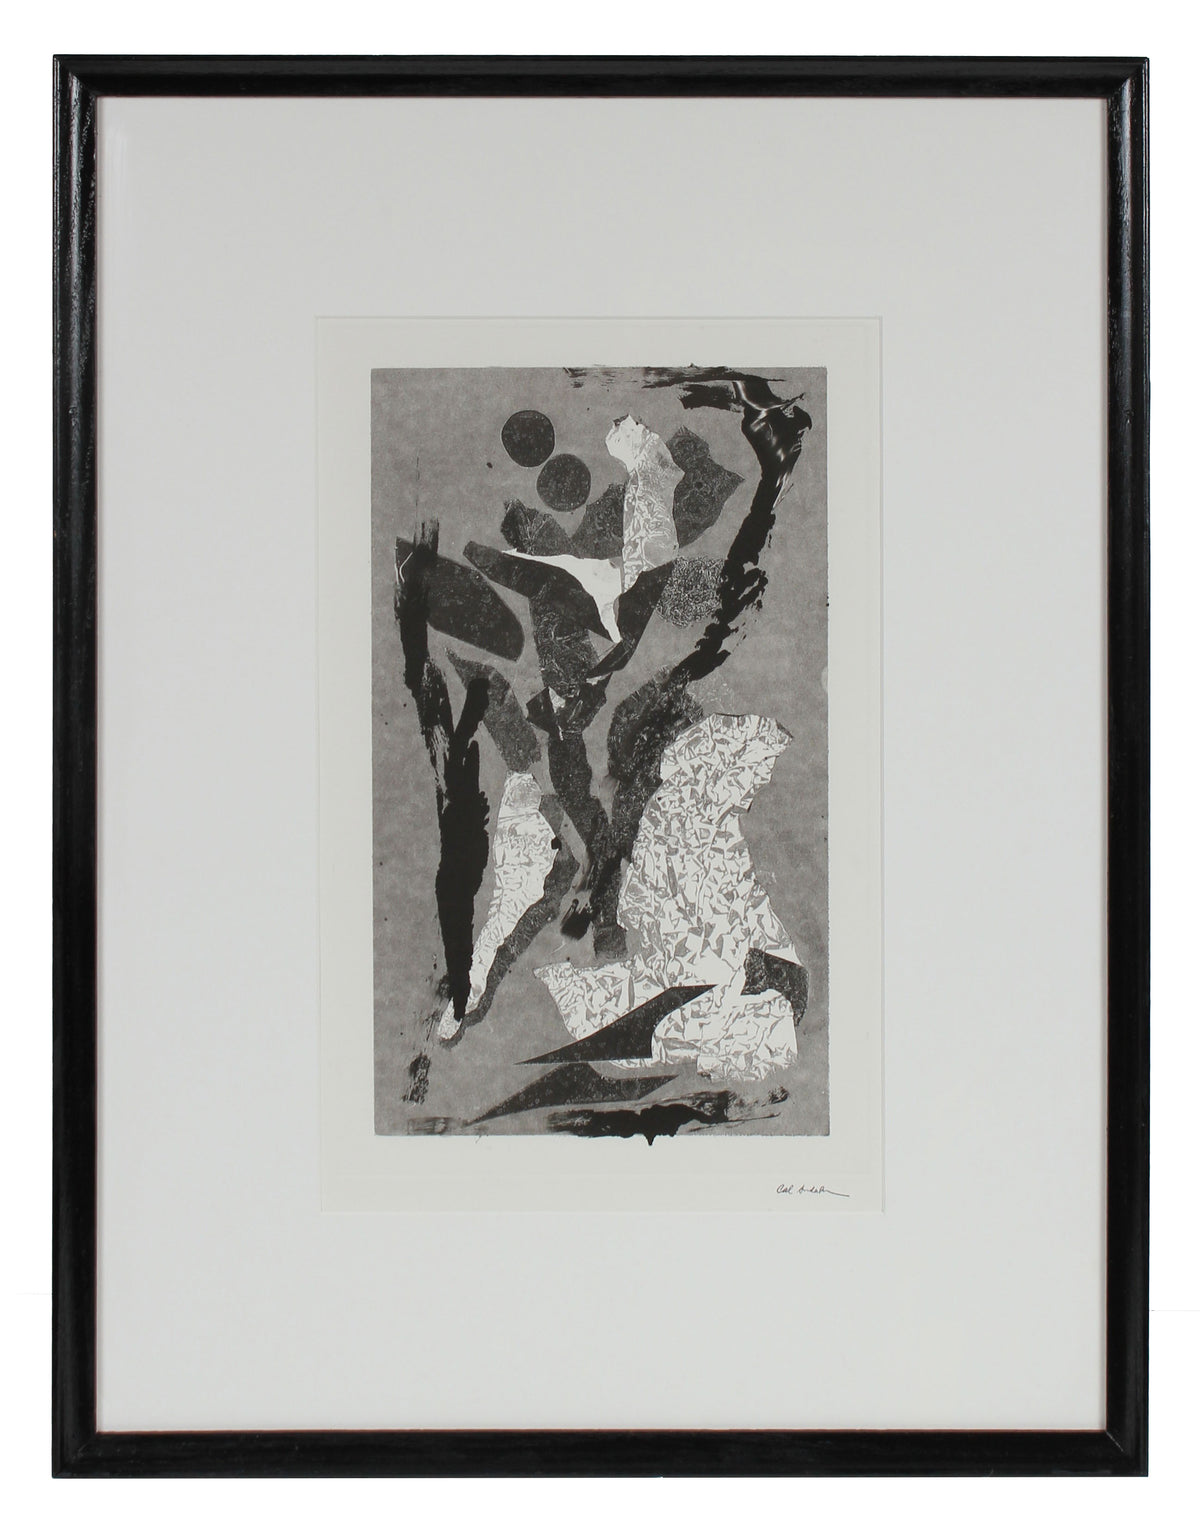 Modernist Abstracted Figures &lt;br&gt;1990-2000s Monotype &lt;br&gt;&lt;br&gt;#99304